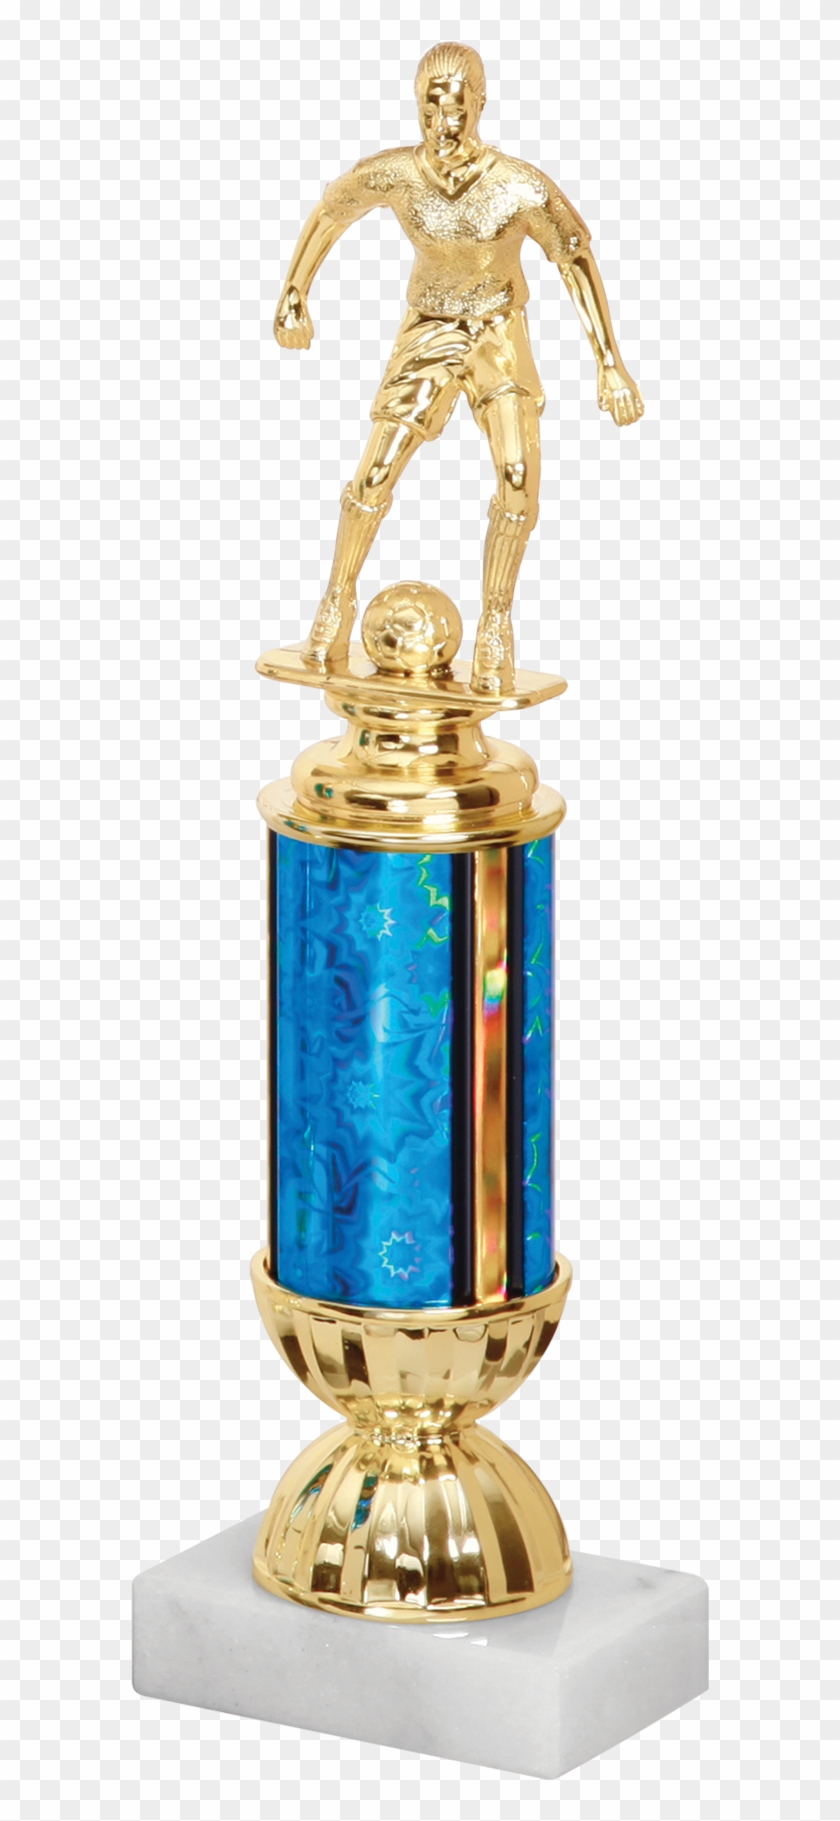 Column Trophy Impressive Awards Transparent Background - Trophy Clipart #2229163